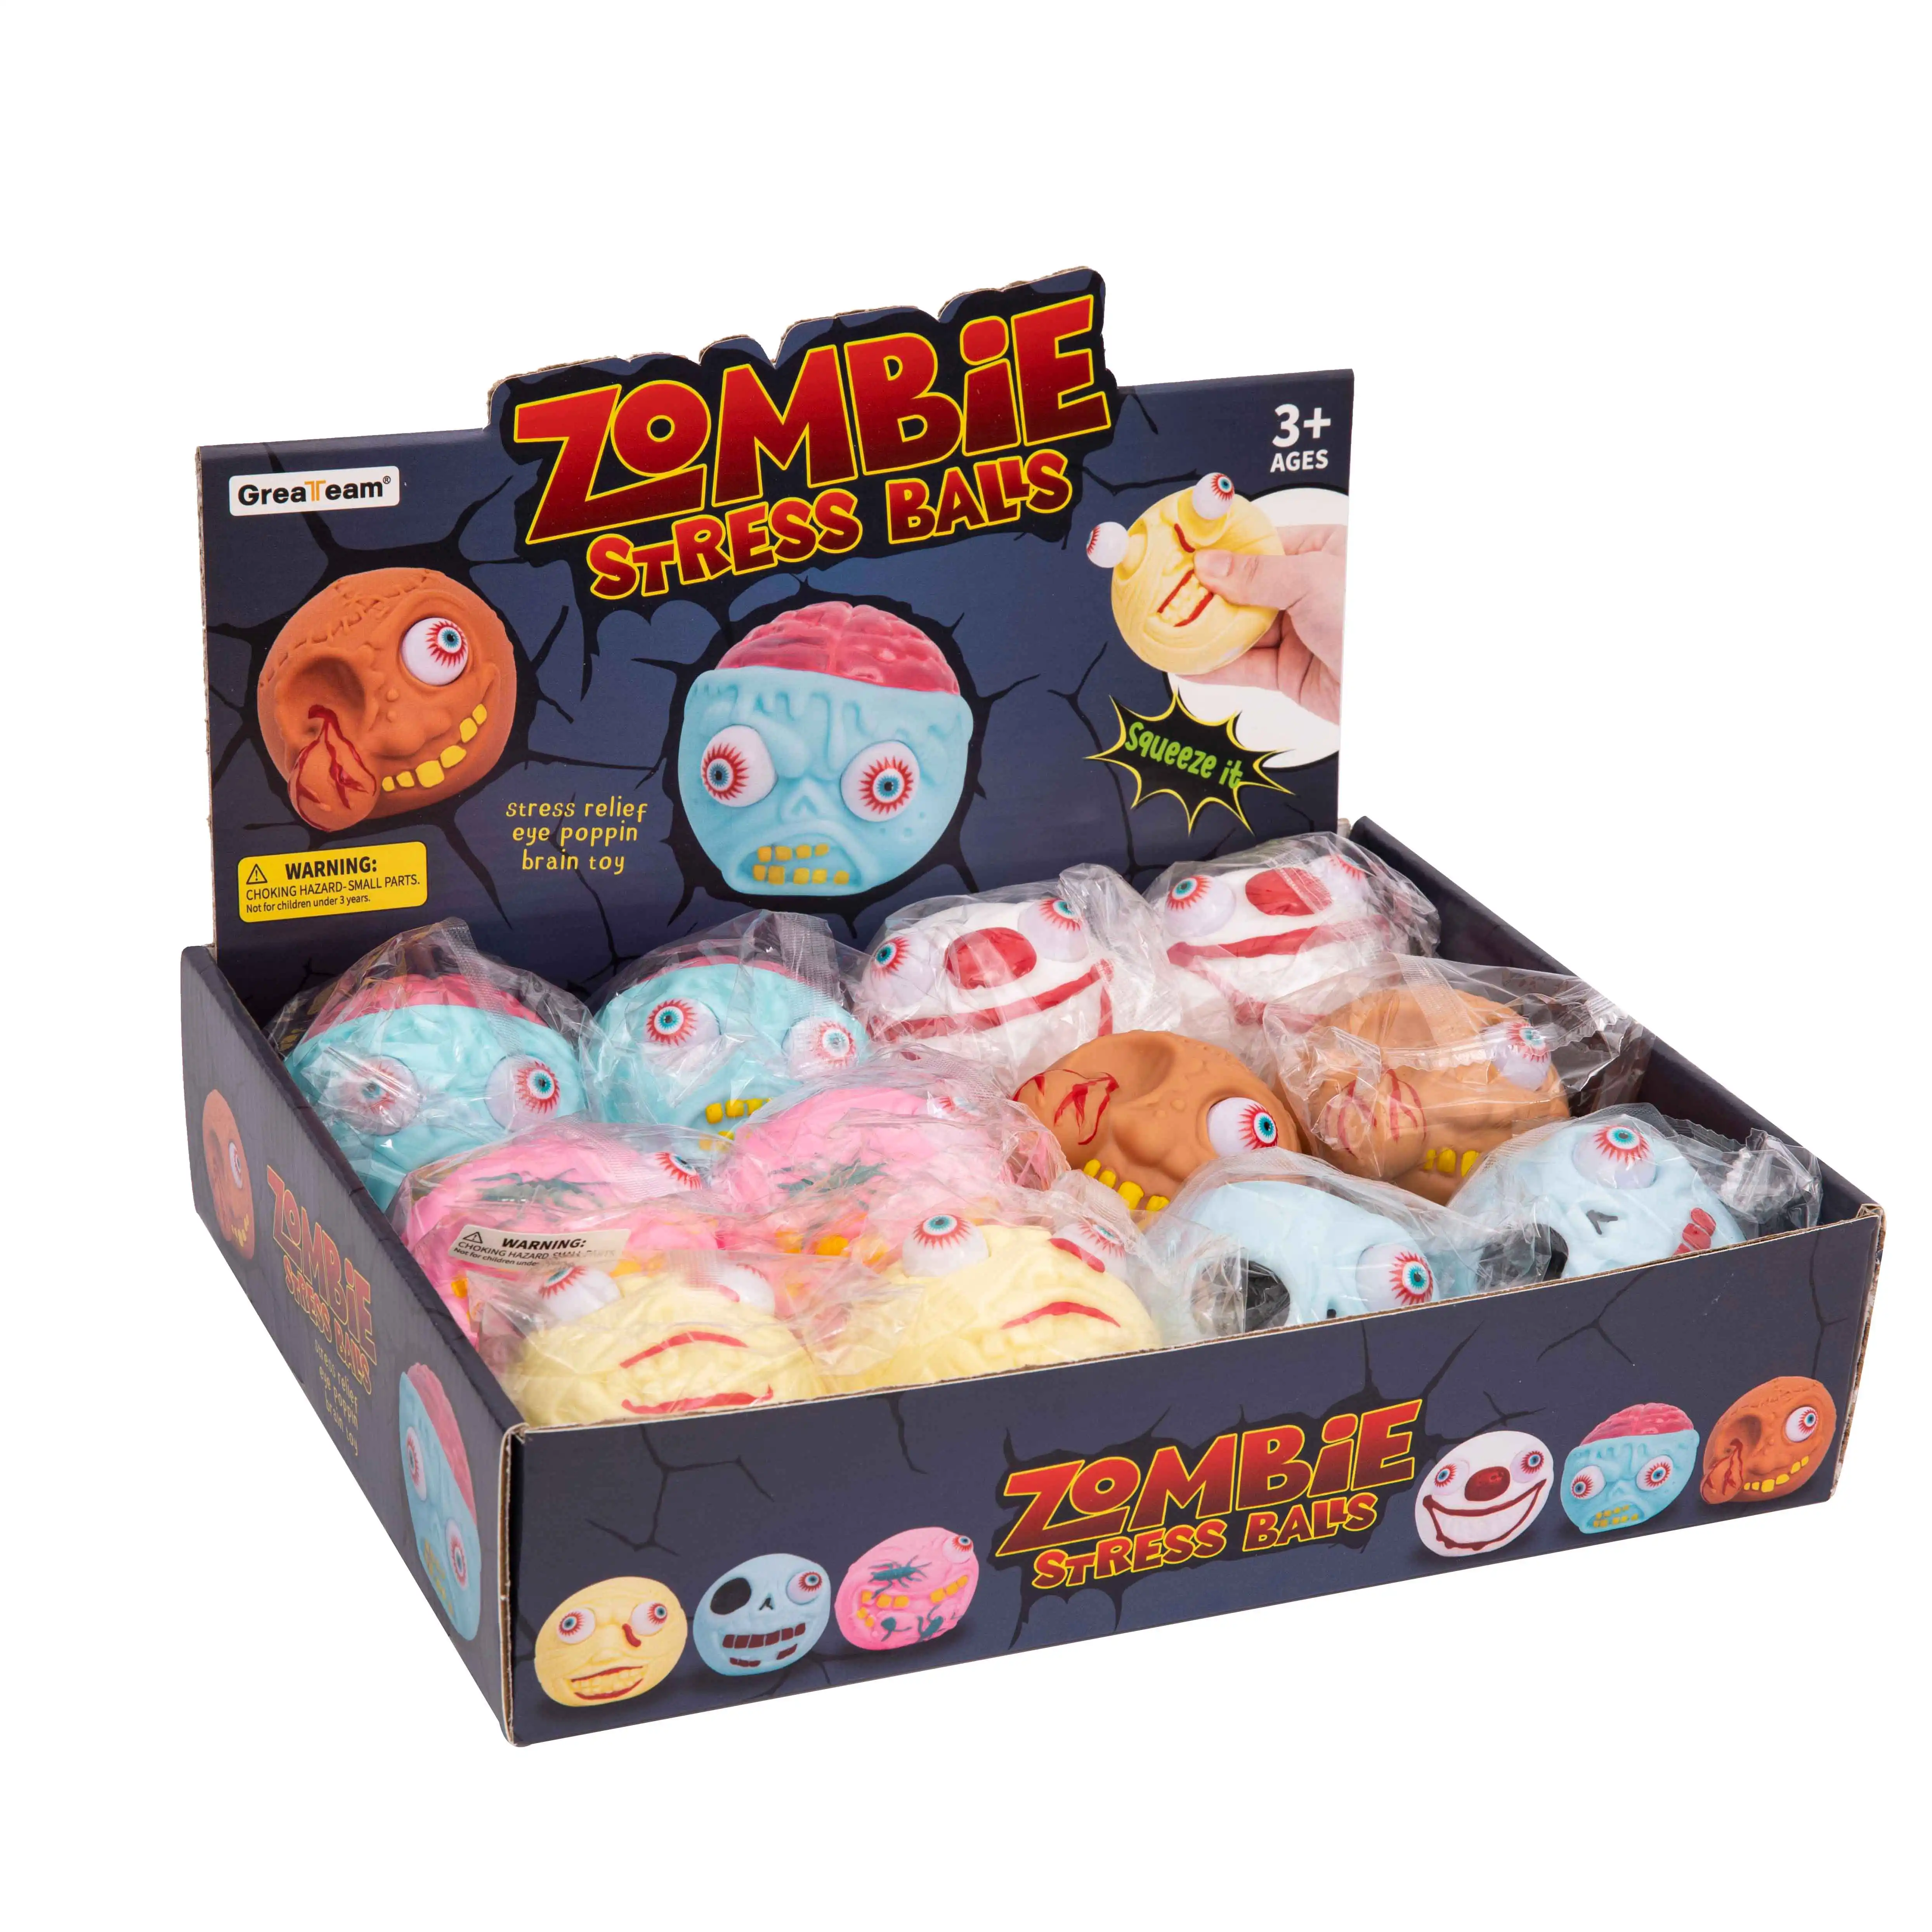 Zombie stress balls skull secompression Toy Display Box giocattoli educativi per bambini giocattoli di decompressione